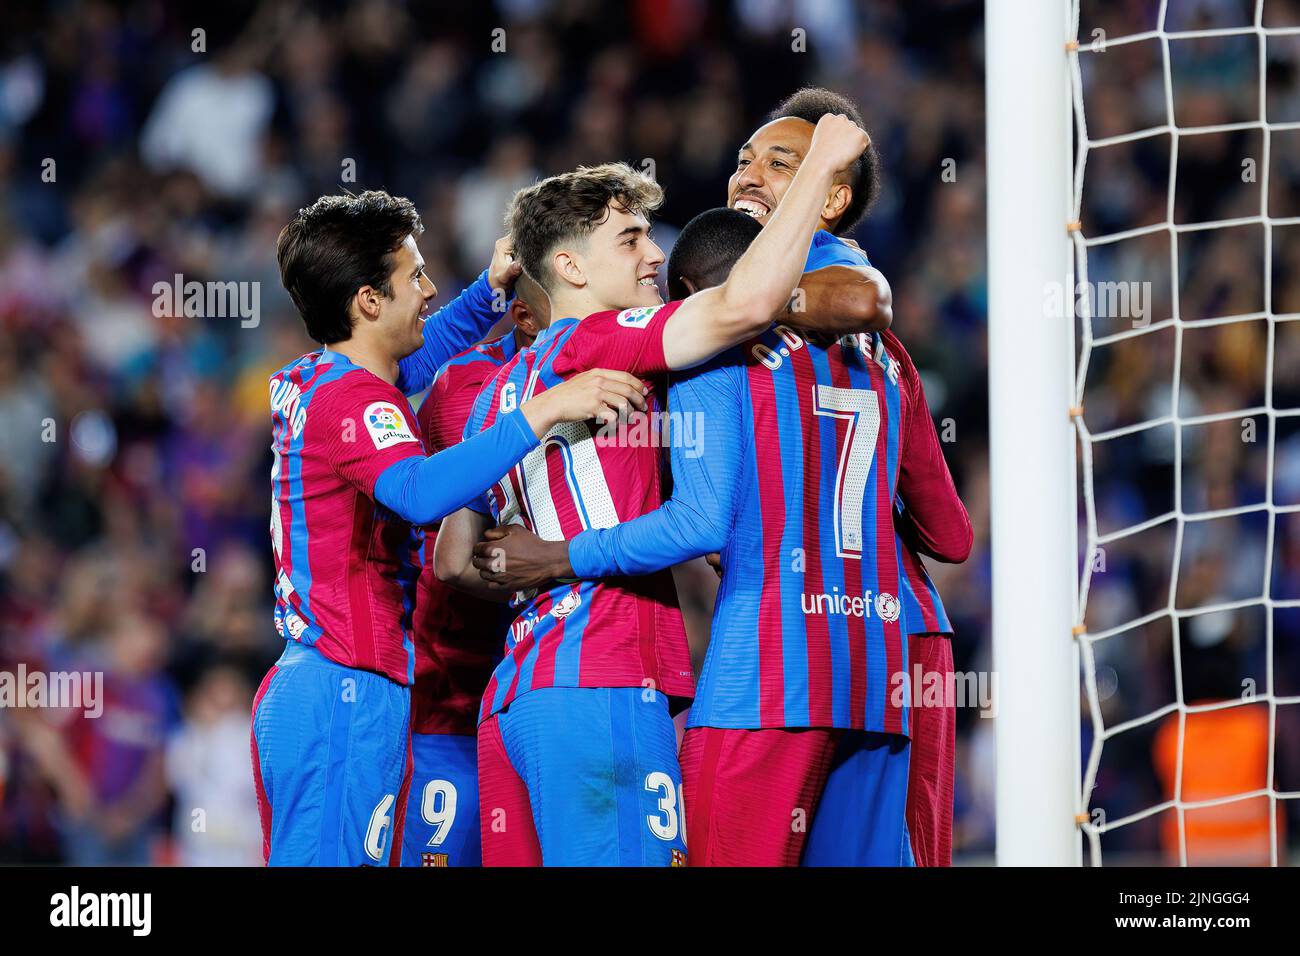 BARCELONA - MAYO 10: Aubameyang celebra tras marcar un gol durante el partido de Liga entre el FC Barcelona y el Real Club Celta de Vigo en el Camp N. Foto de stock